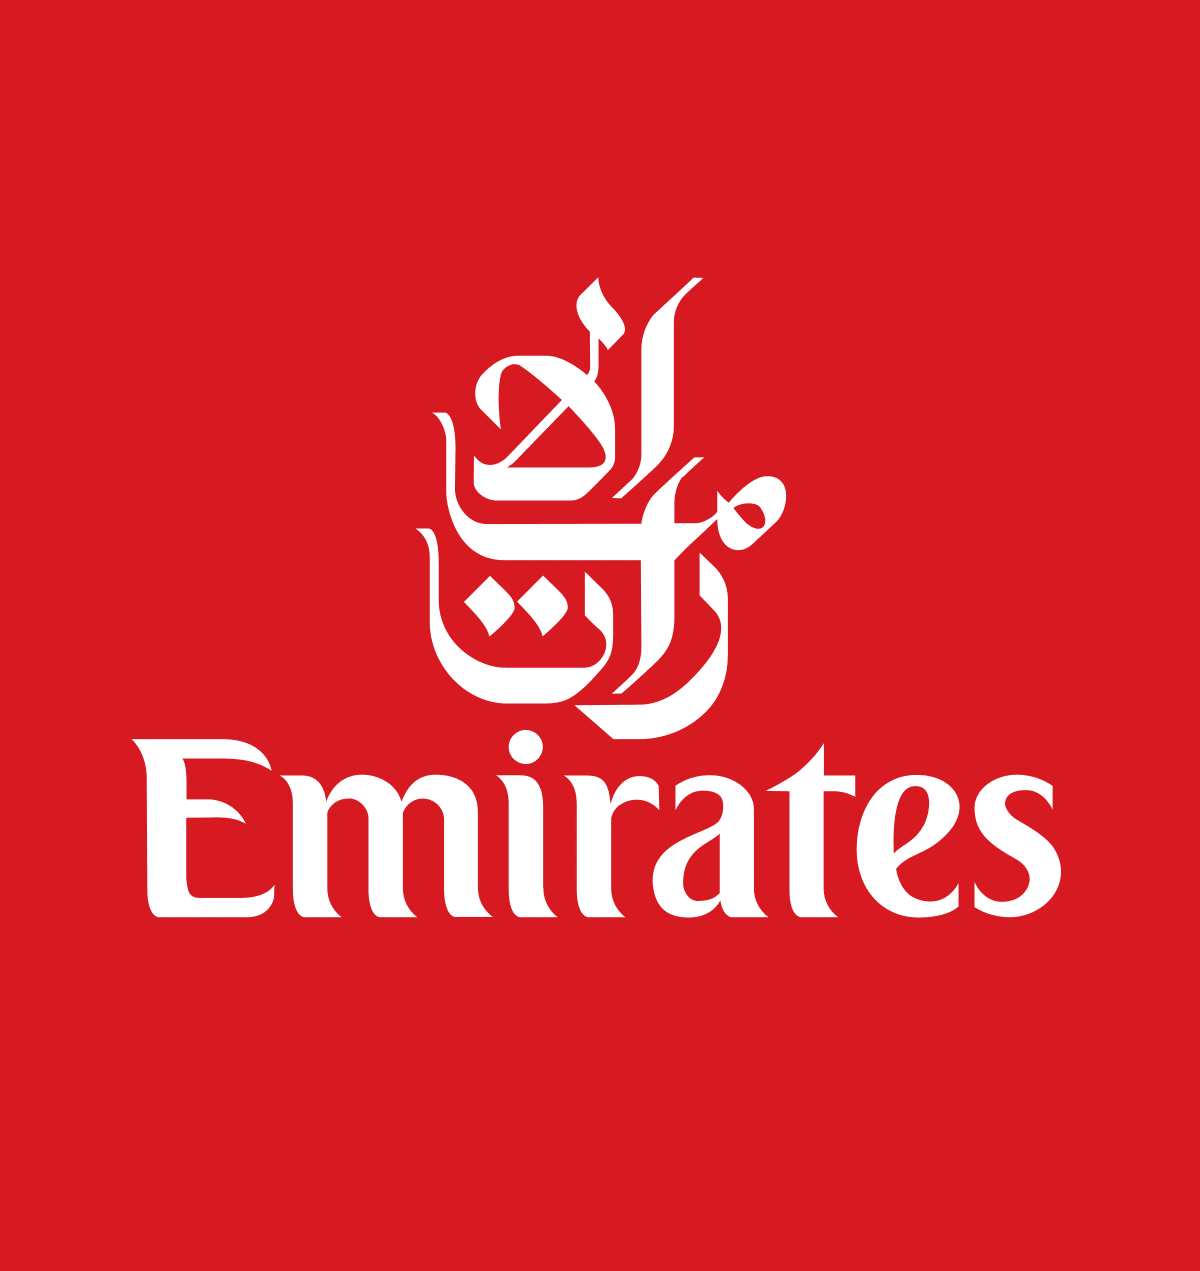 Emirates airline logo - psychology of logo color